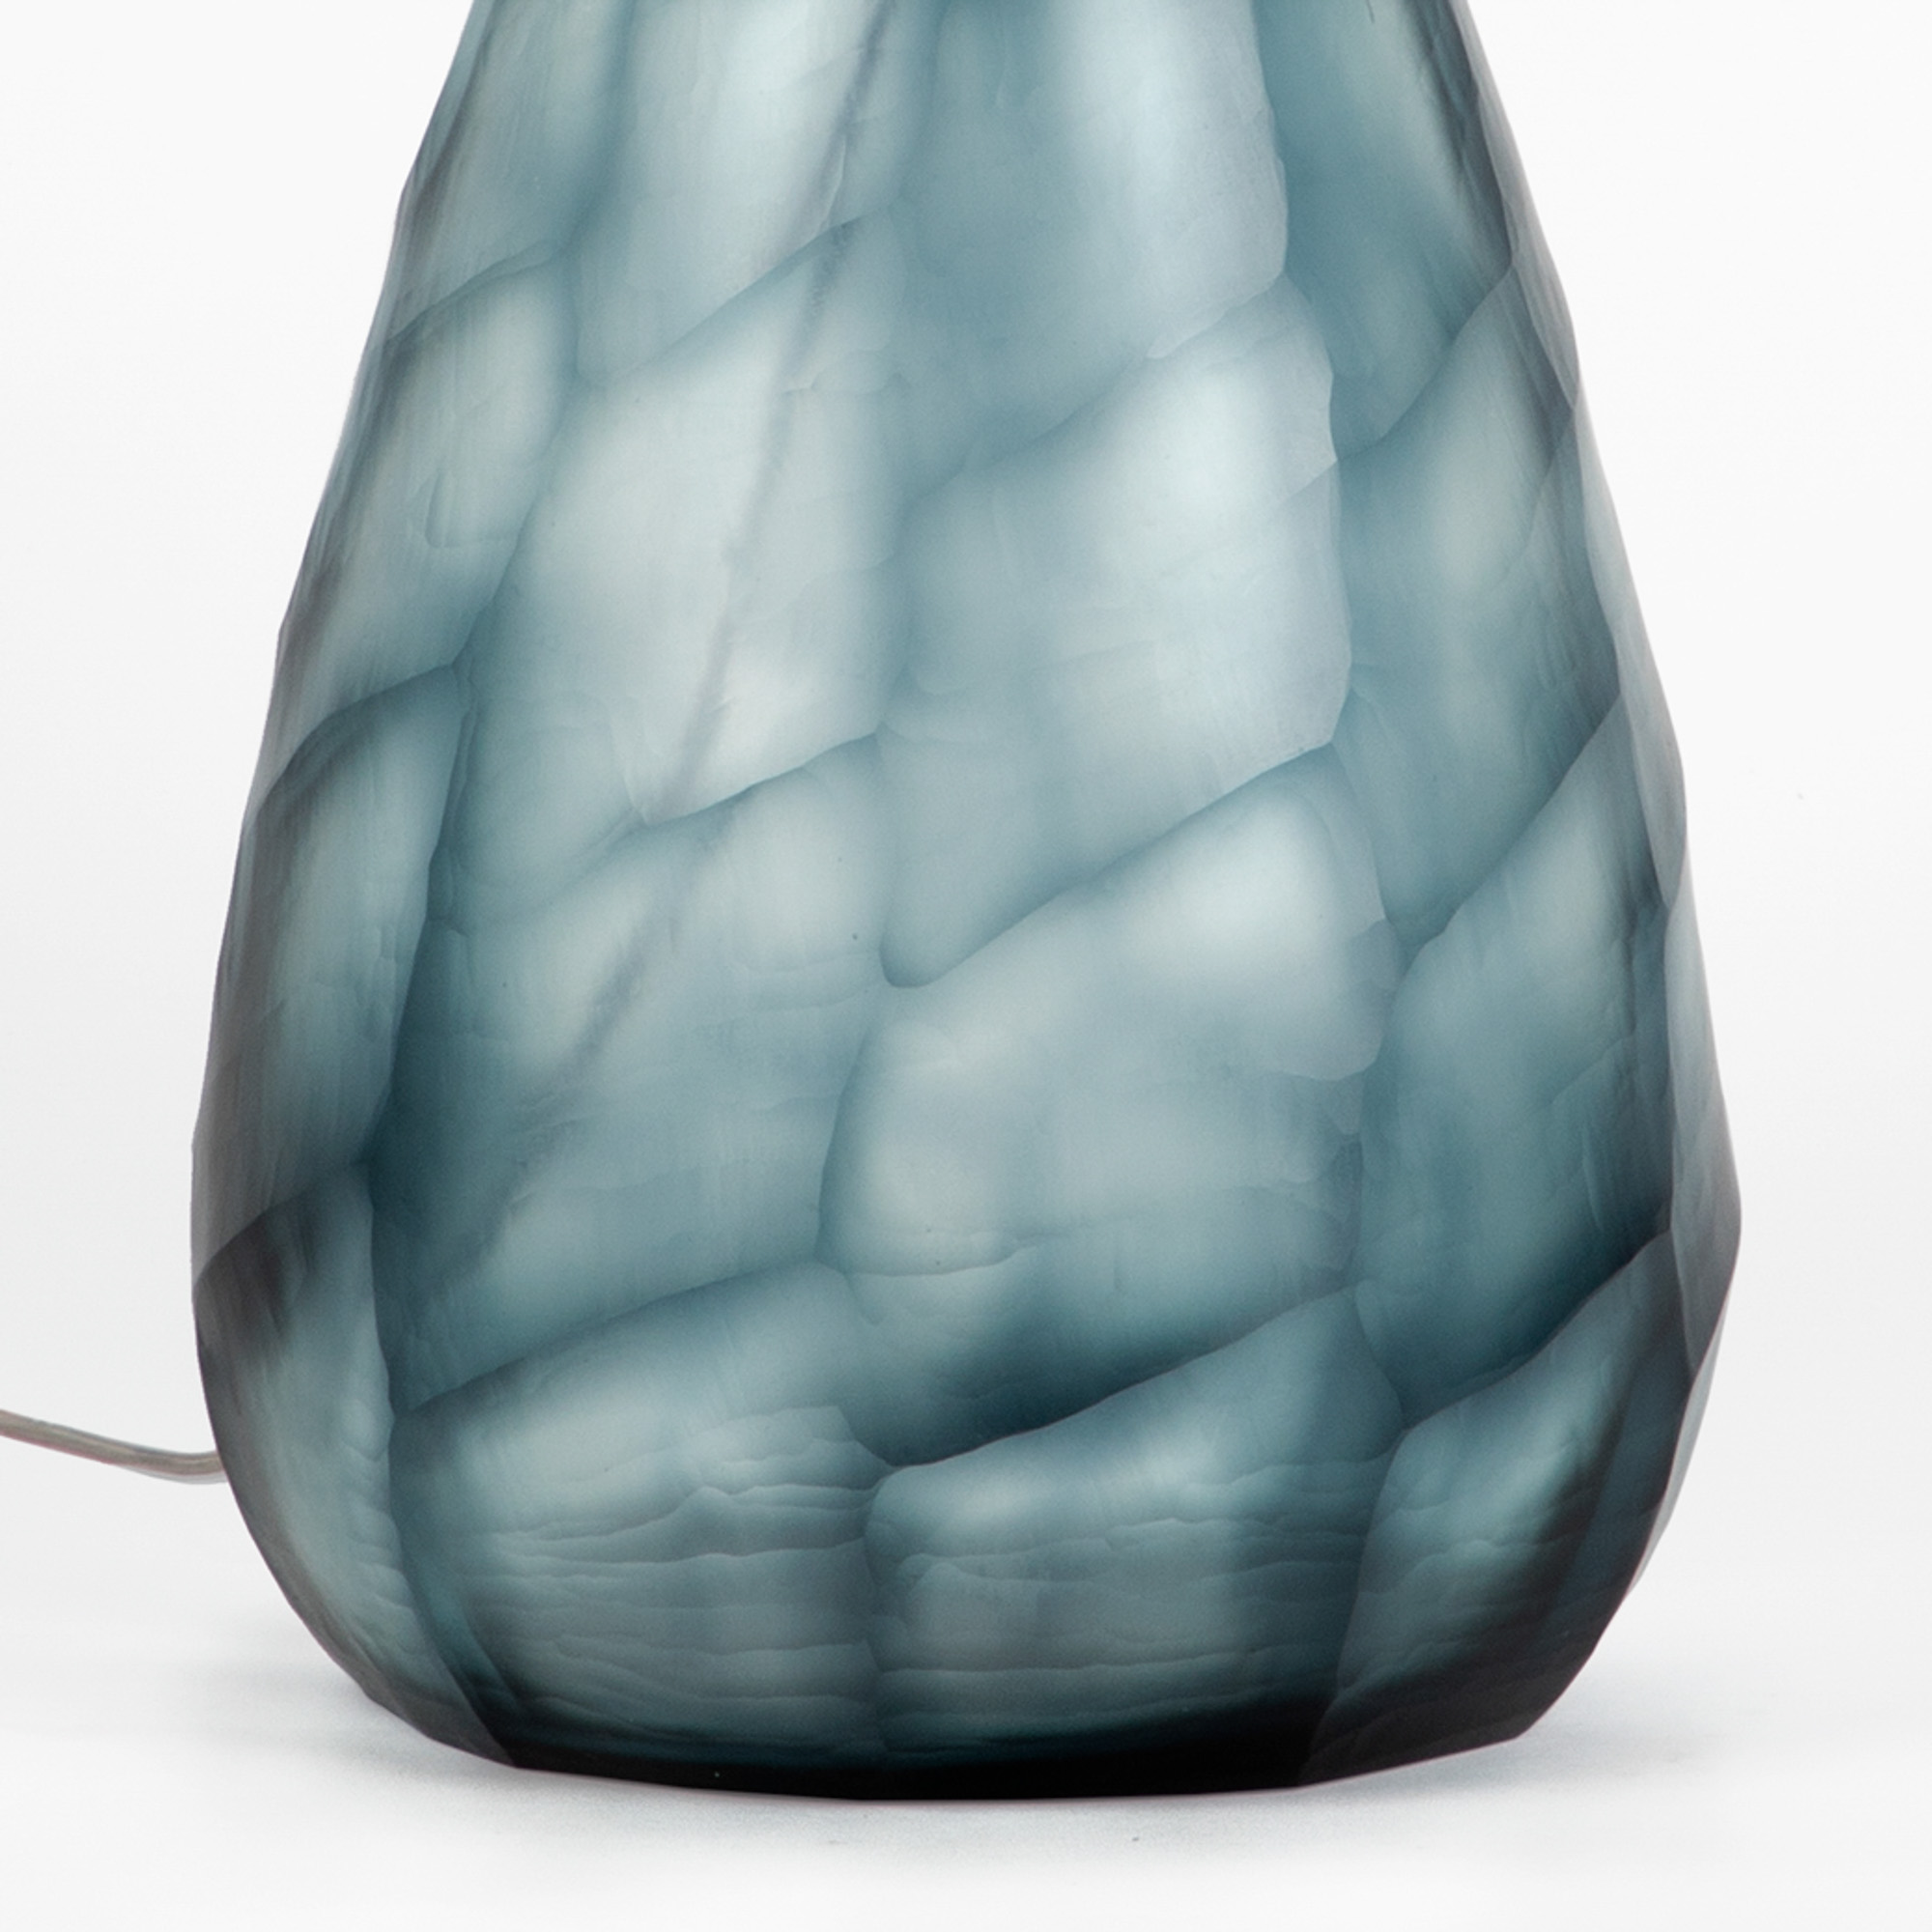 Shibori Crystal Glass Lamp Stand - Teal